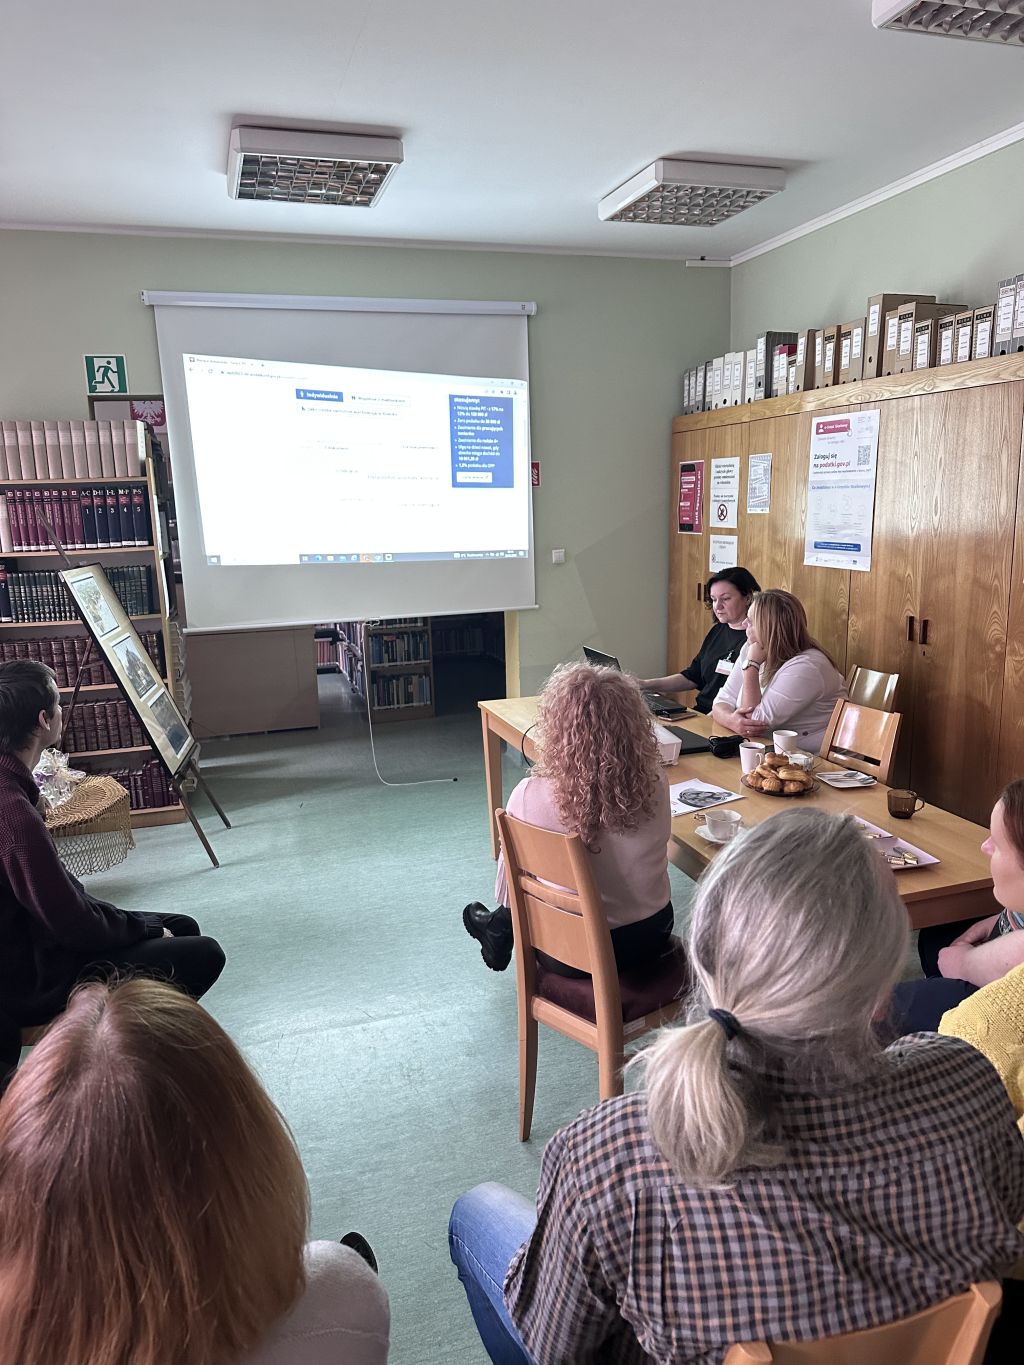 Szkolenie dla bibliotekarzy przeprowadzone przez pracowników Urzędu Skarbowego w Zgorzelcu. Zdjęcie jest odnośnikiem do wpisu "Szkolenie dla bibliotekarzy".